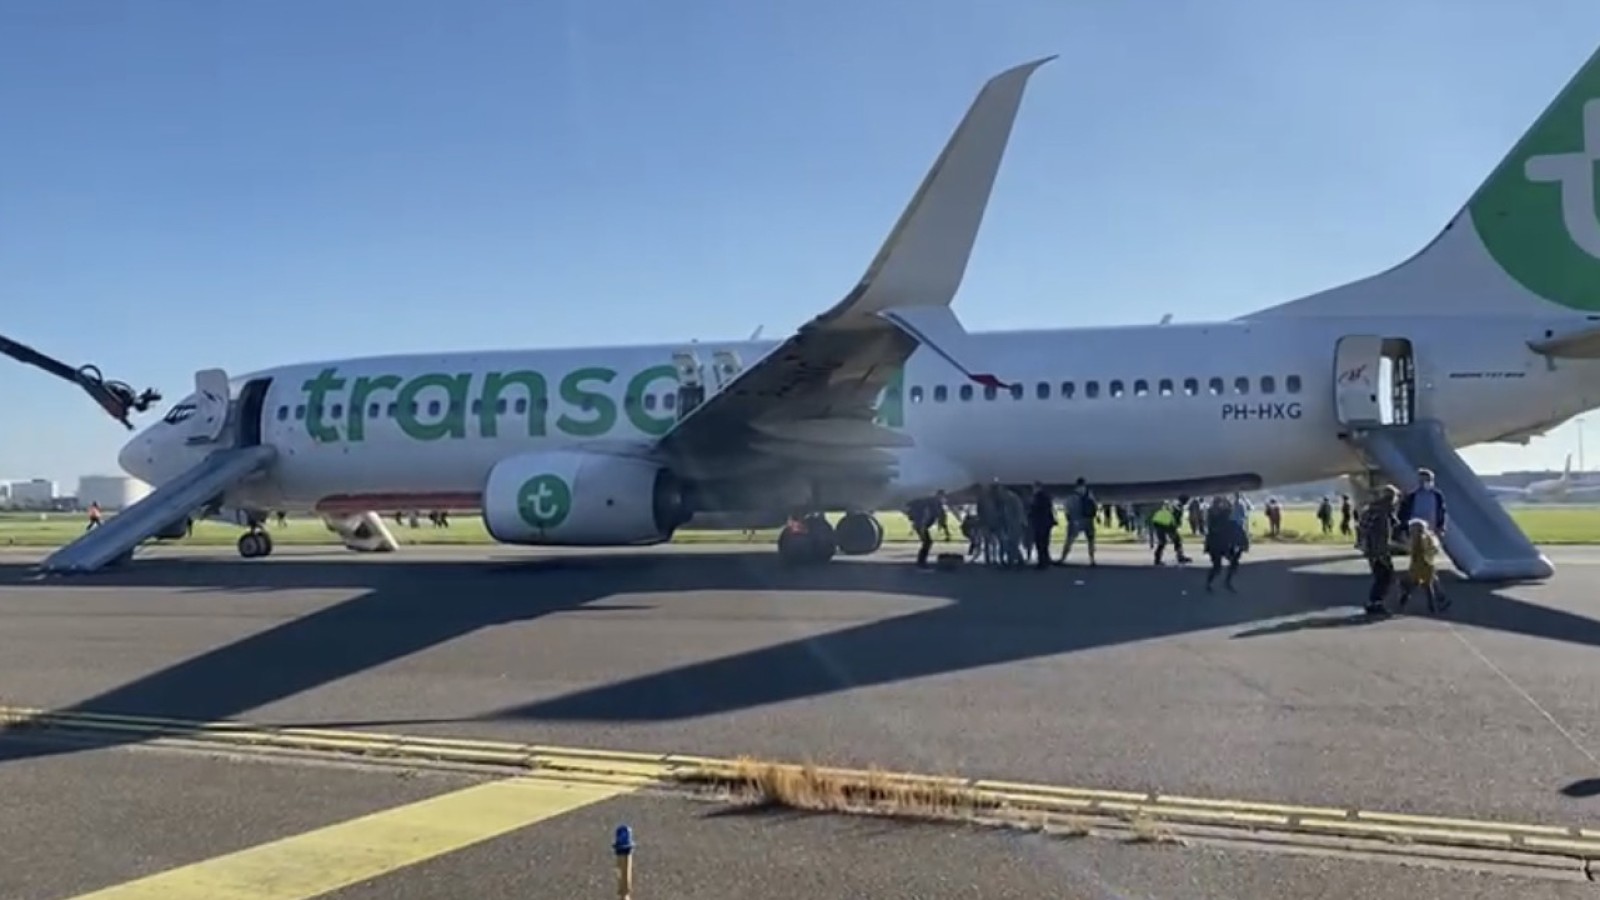 Passagier over ontruimde Transavia-vlucht: "Er werd nog geschreeuwd, no luggage!" Nieuws